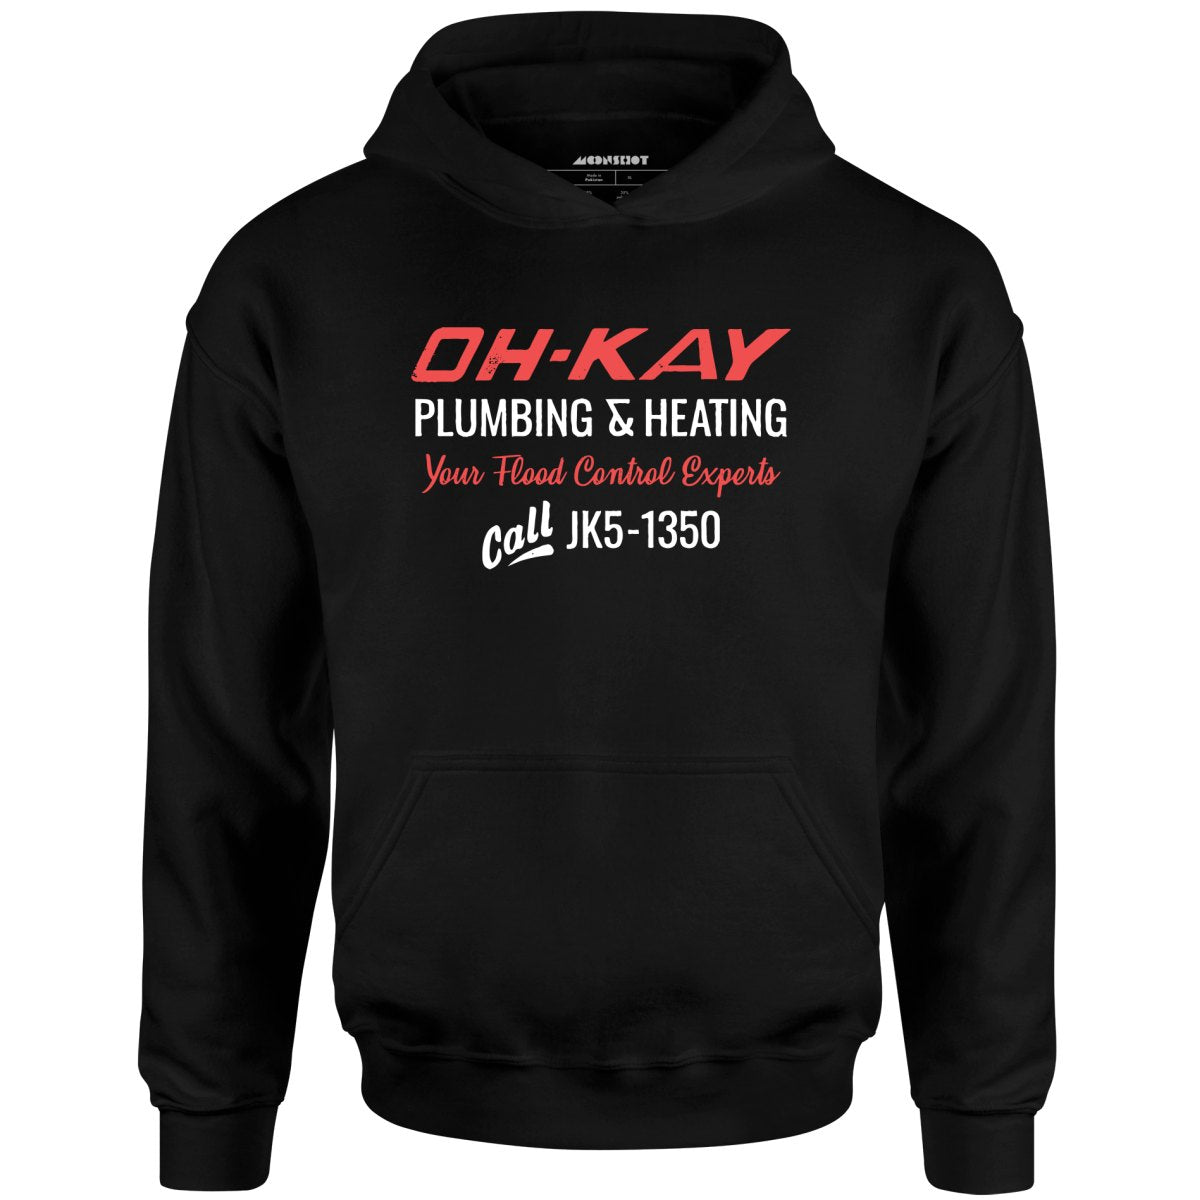 Oh-Kay Plumbing & Heating - Unisex Hoodie